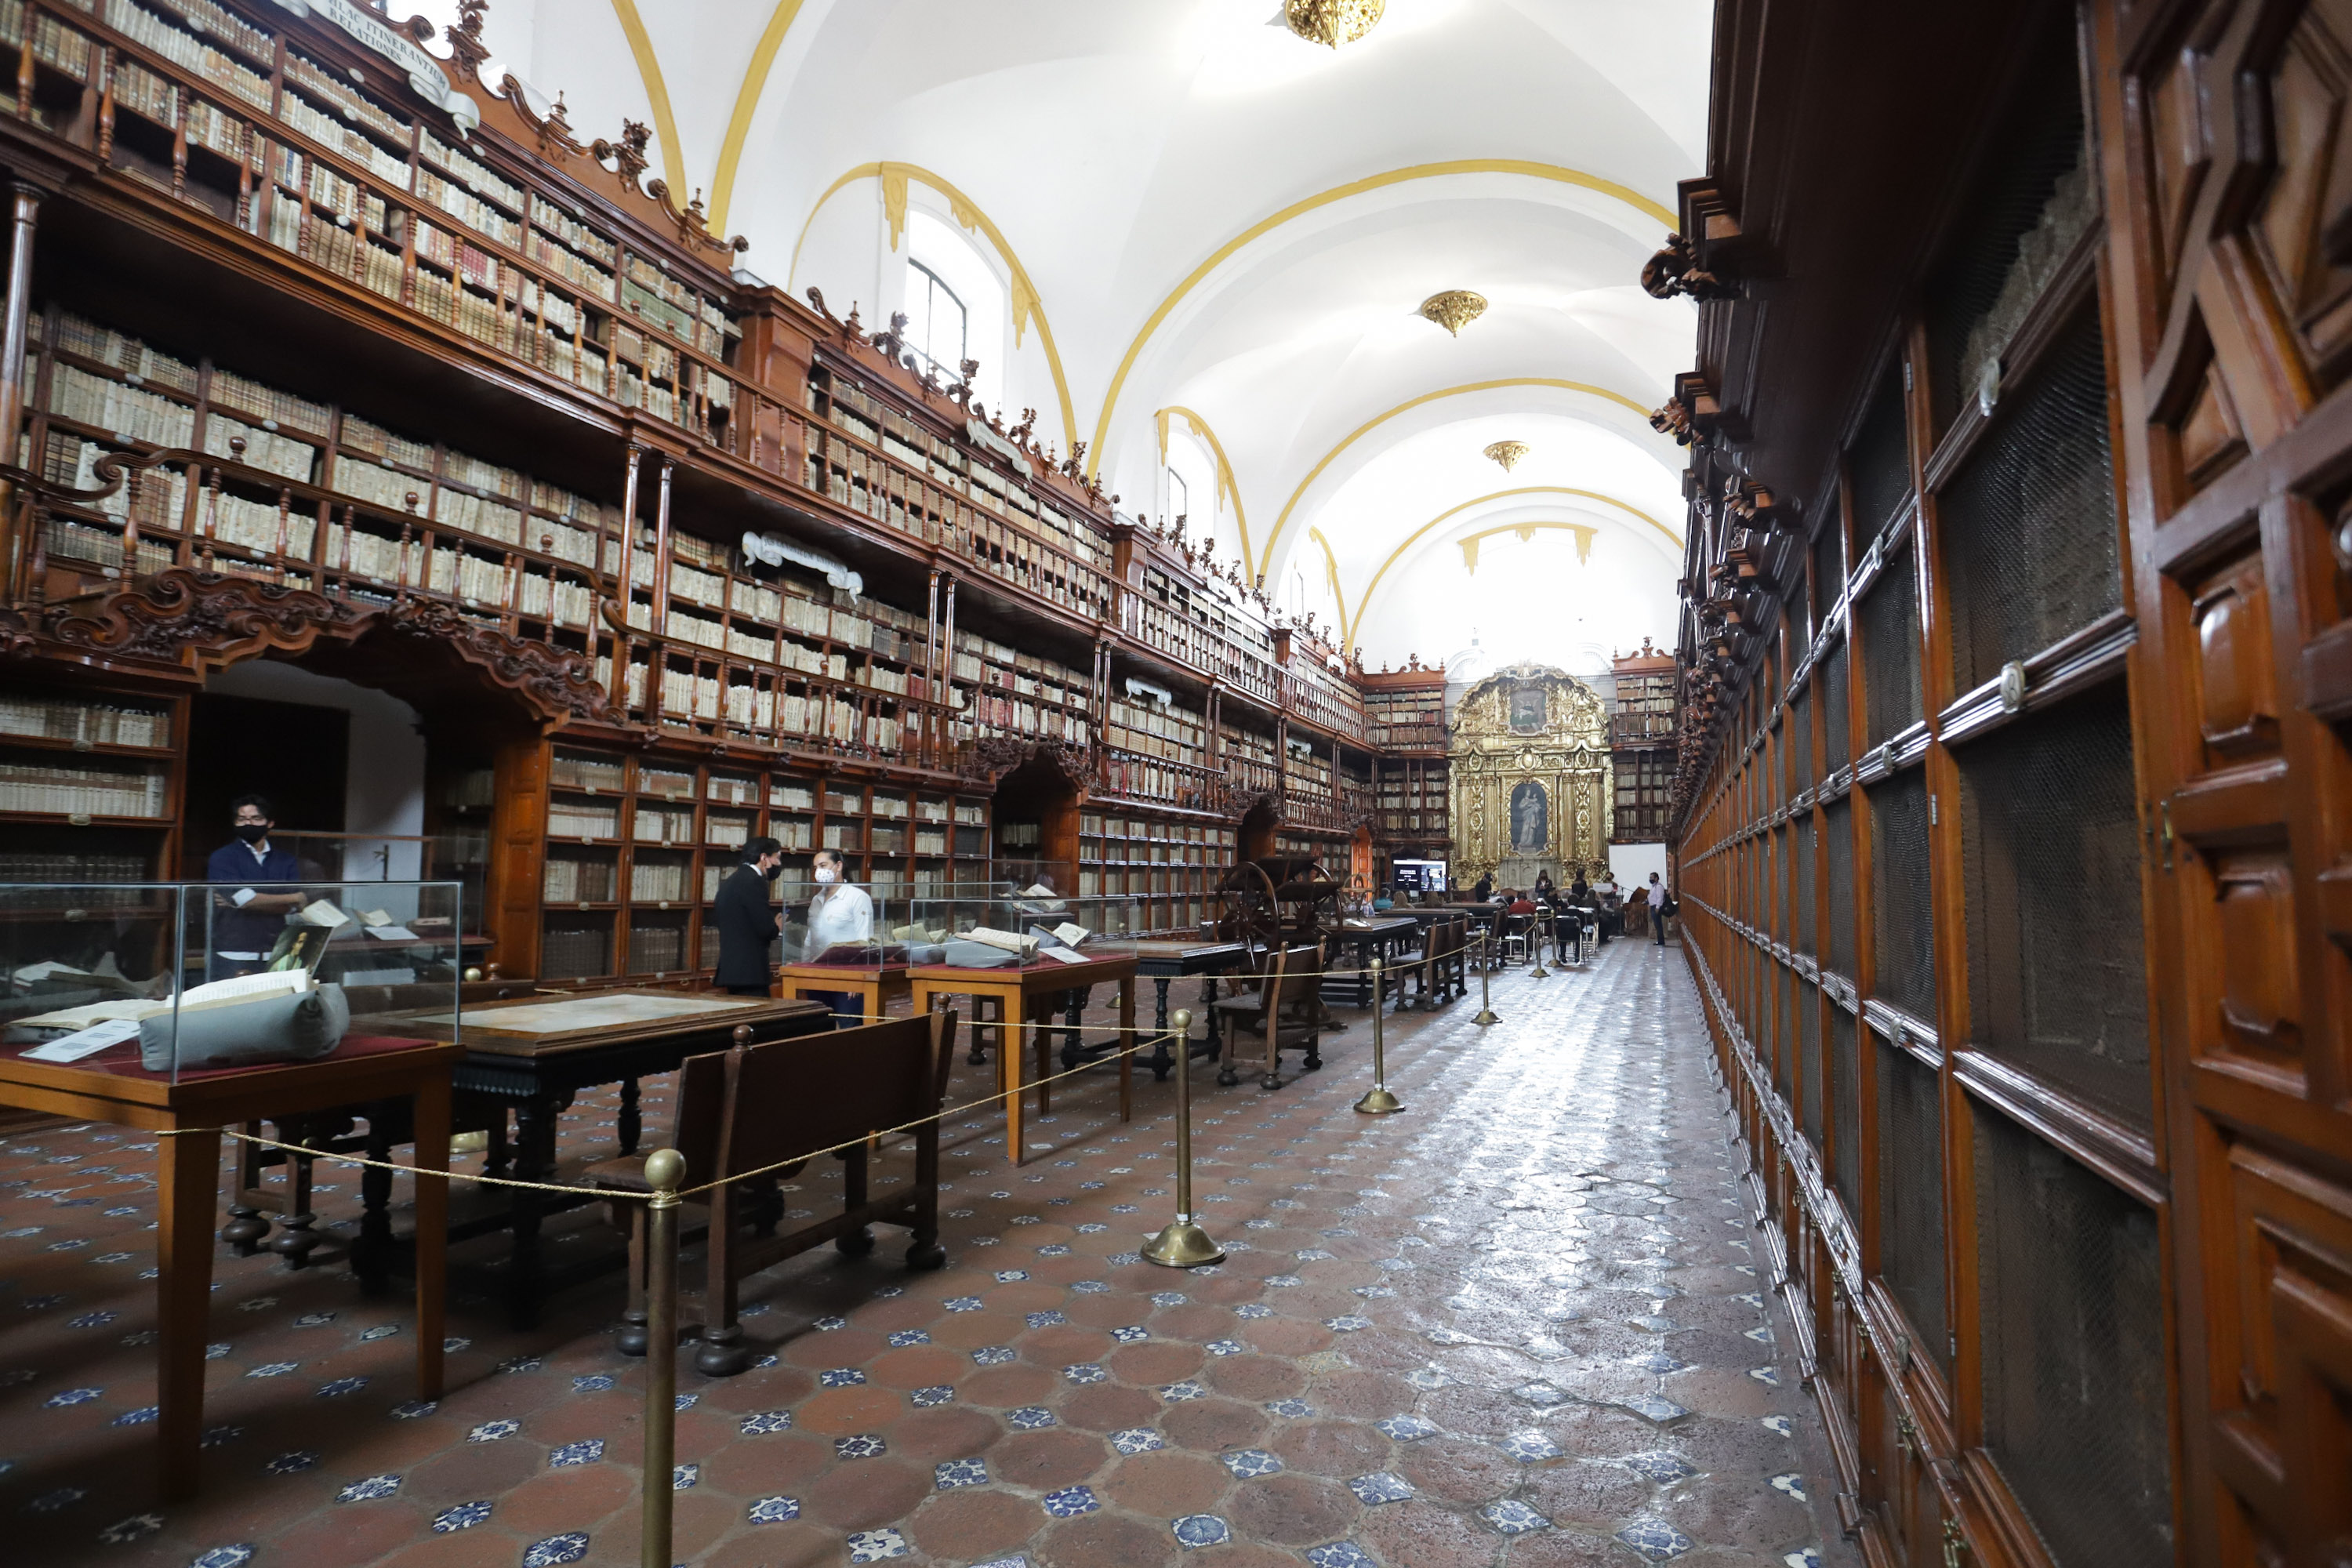 Extranjeros prefieren visitar la Biblioteca Palafoxiana